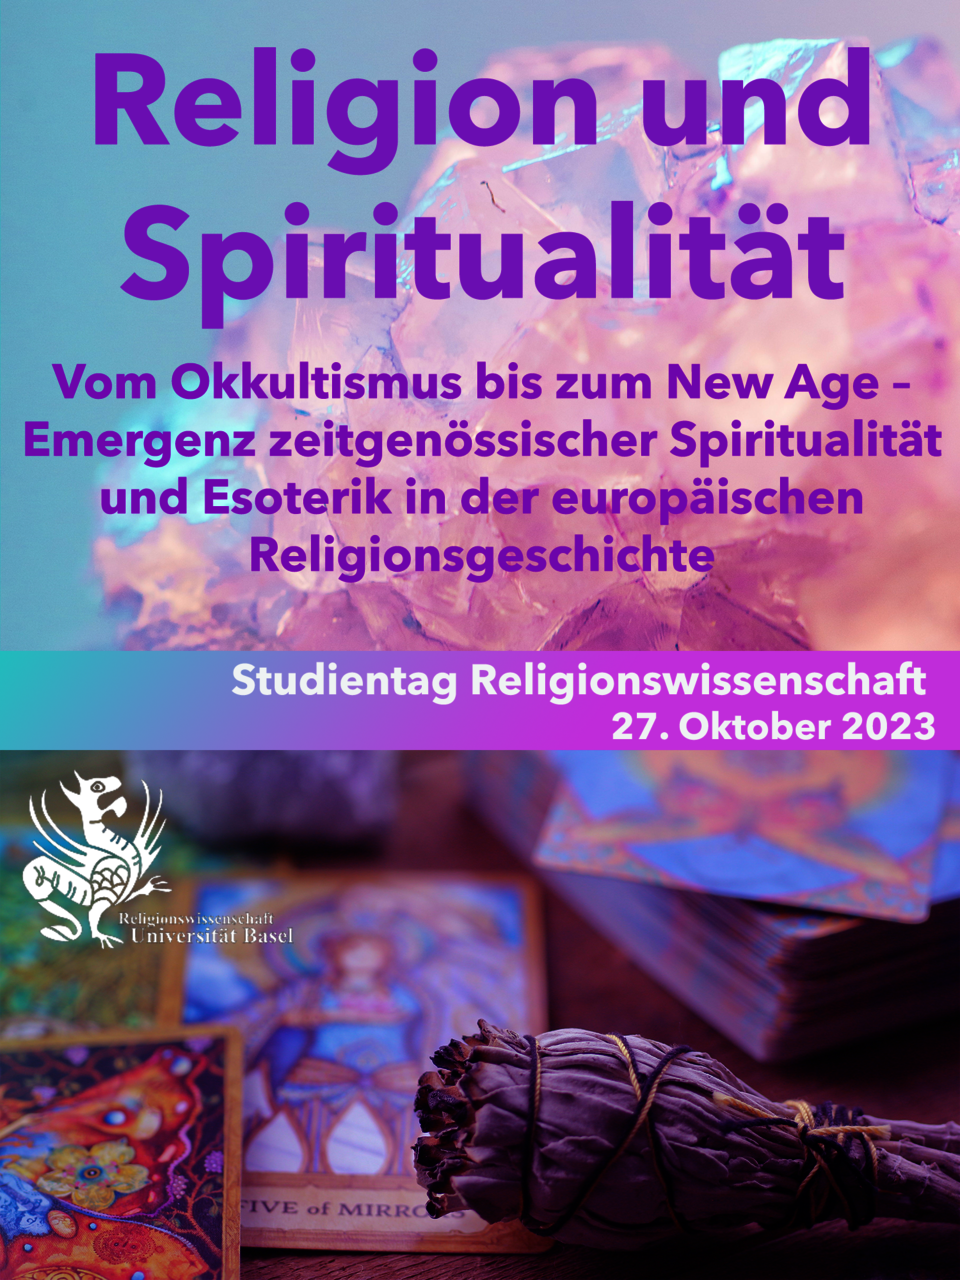 Flyer für den Studientag HS23 "Spiritualität": im Hintergrund in blauen und lila Farbtönen ein Kristall, Tarotkarten und Räucherwerk